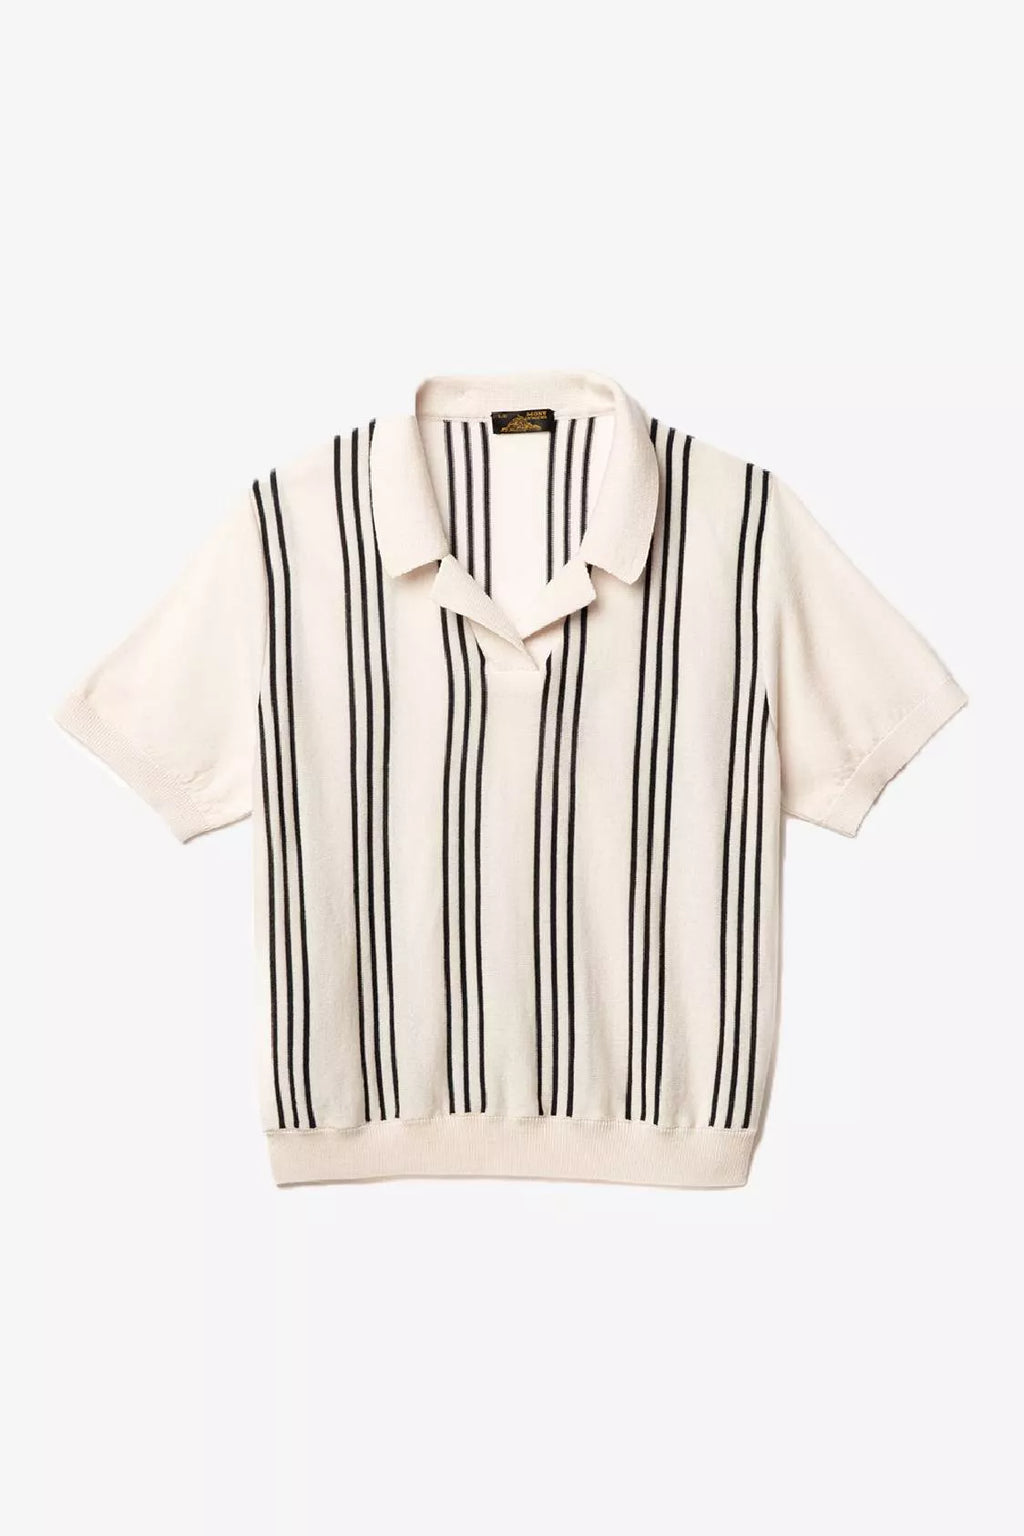 Manilo Stripes Sweater